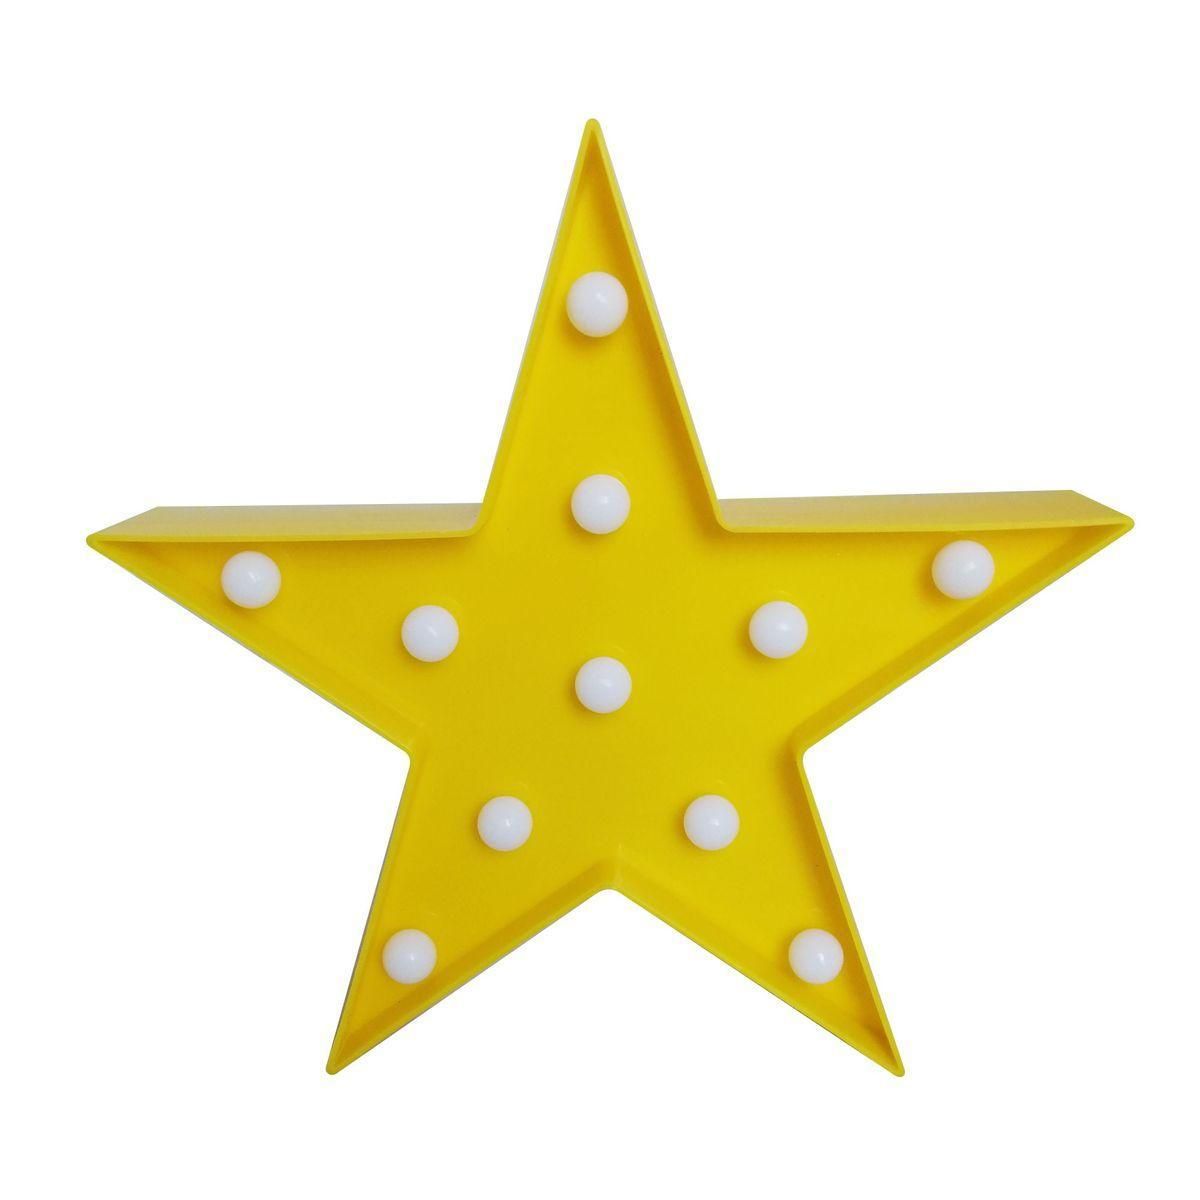 Ночник светодиодный "Звезда", 3 Вт, АБС-пластик, желтый, 170 г., 270*270*27 мм, ТБ